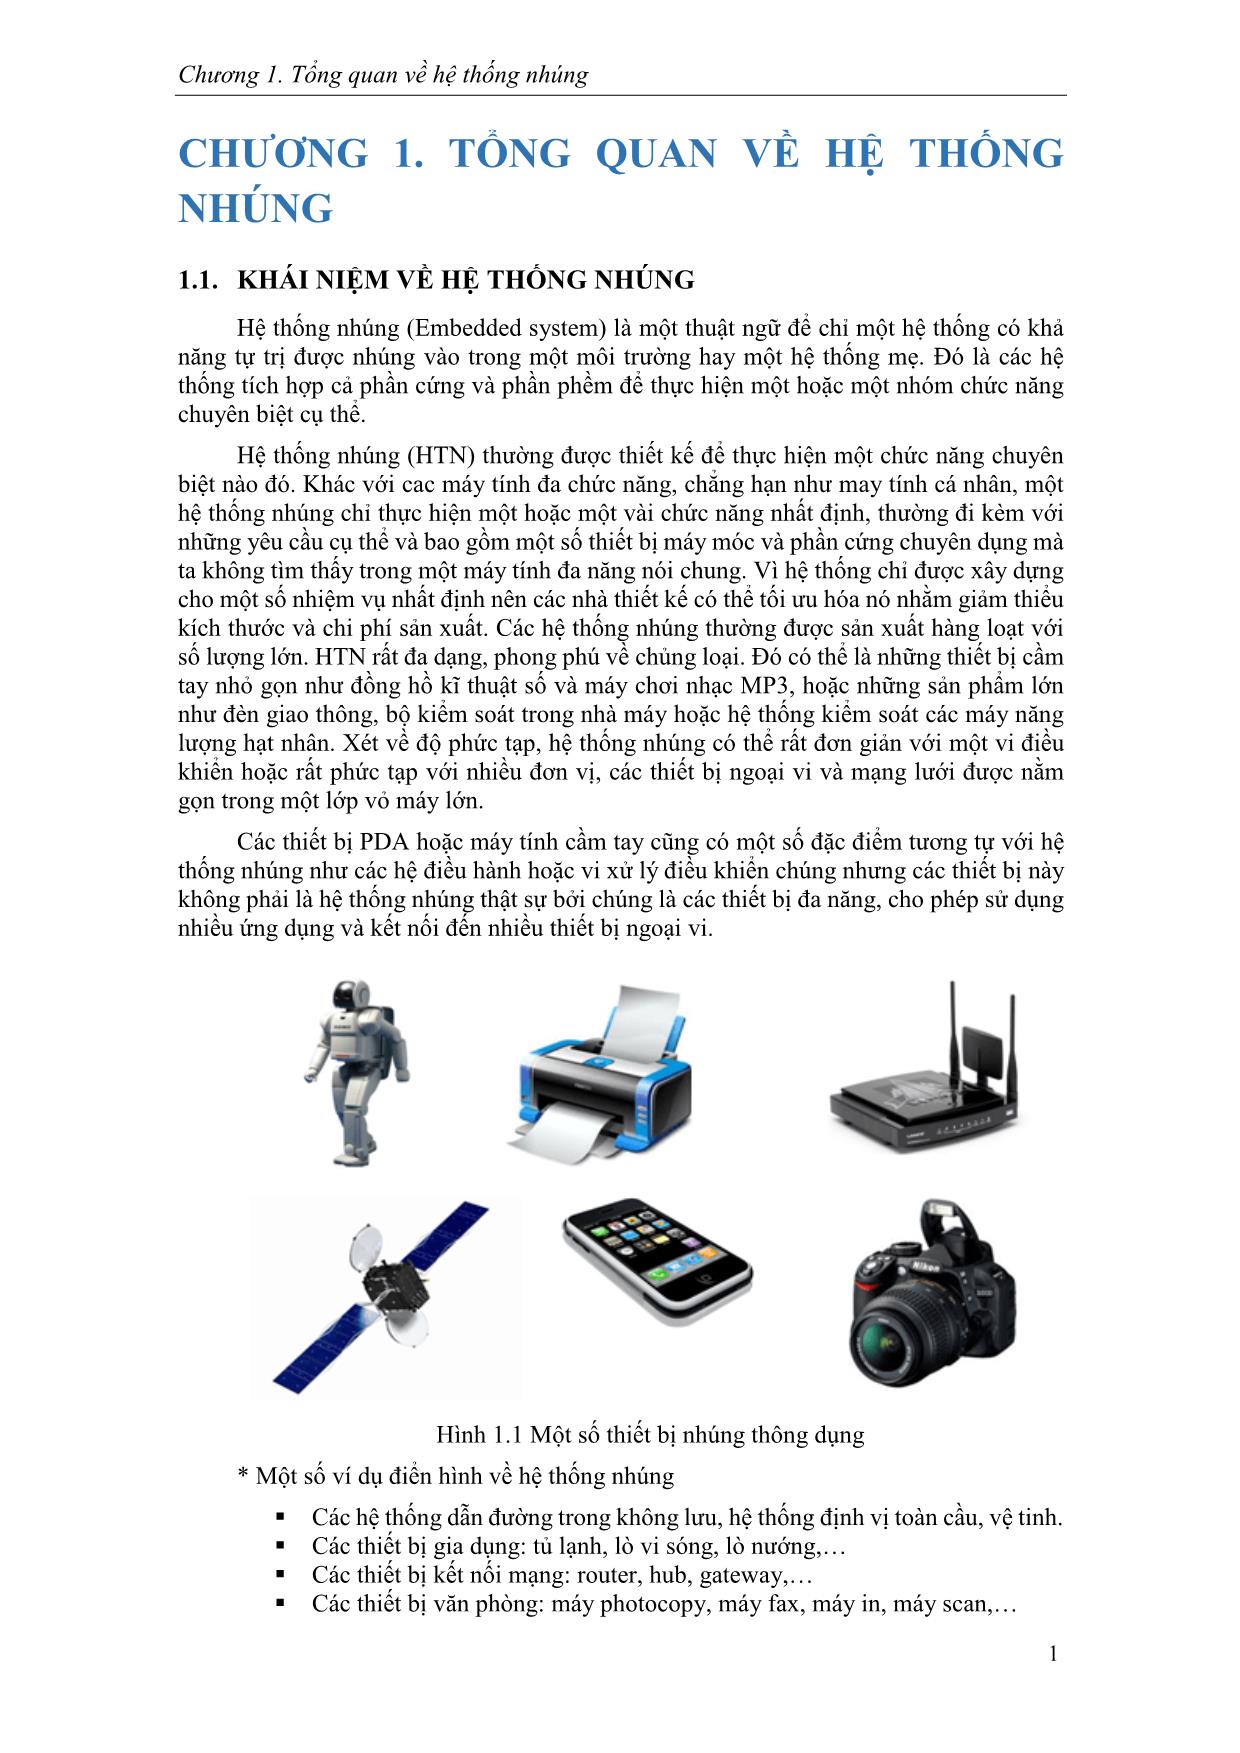 Giáo trình Hệ thống nhúng (Phần 1) trang 5